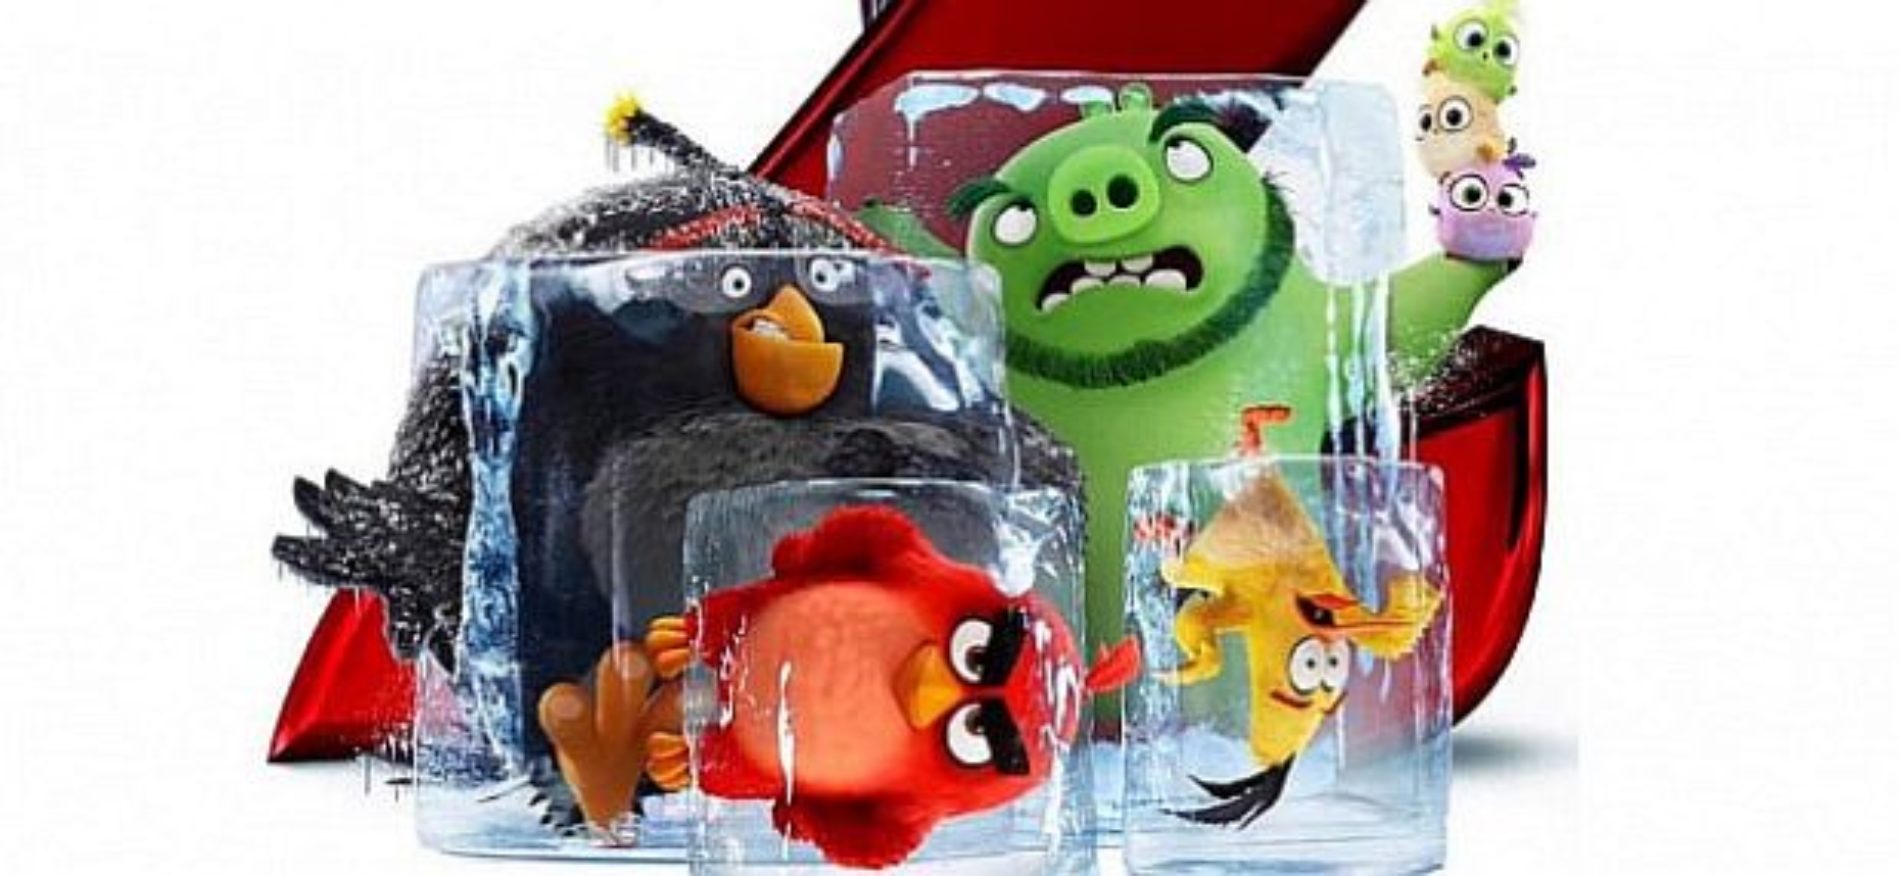 Están De Regreso Angry Birds 2 Teaser Tráiler Revutj